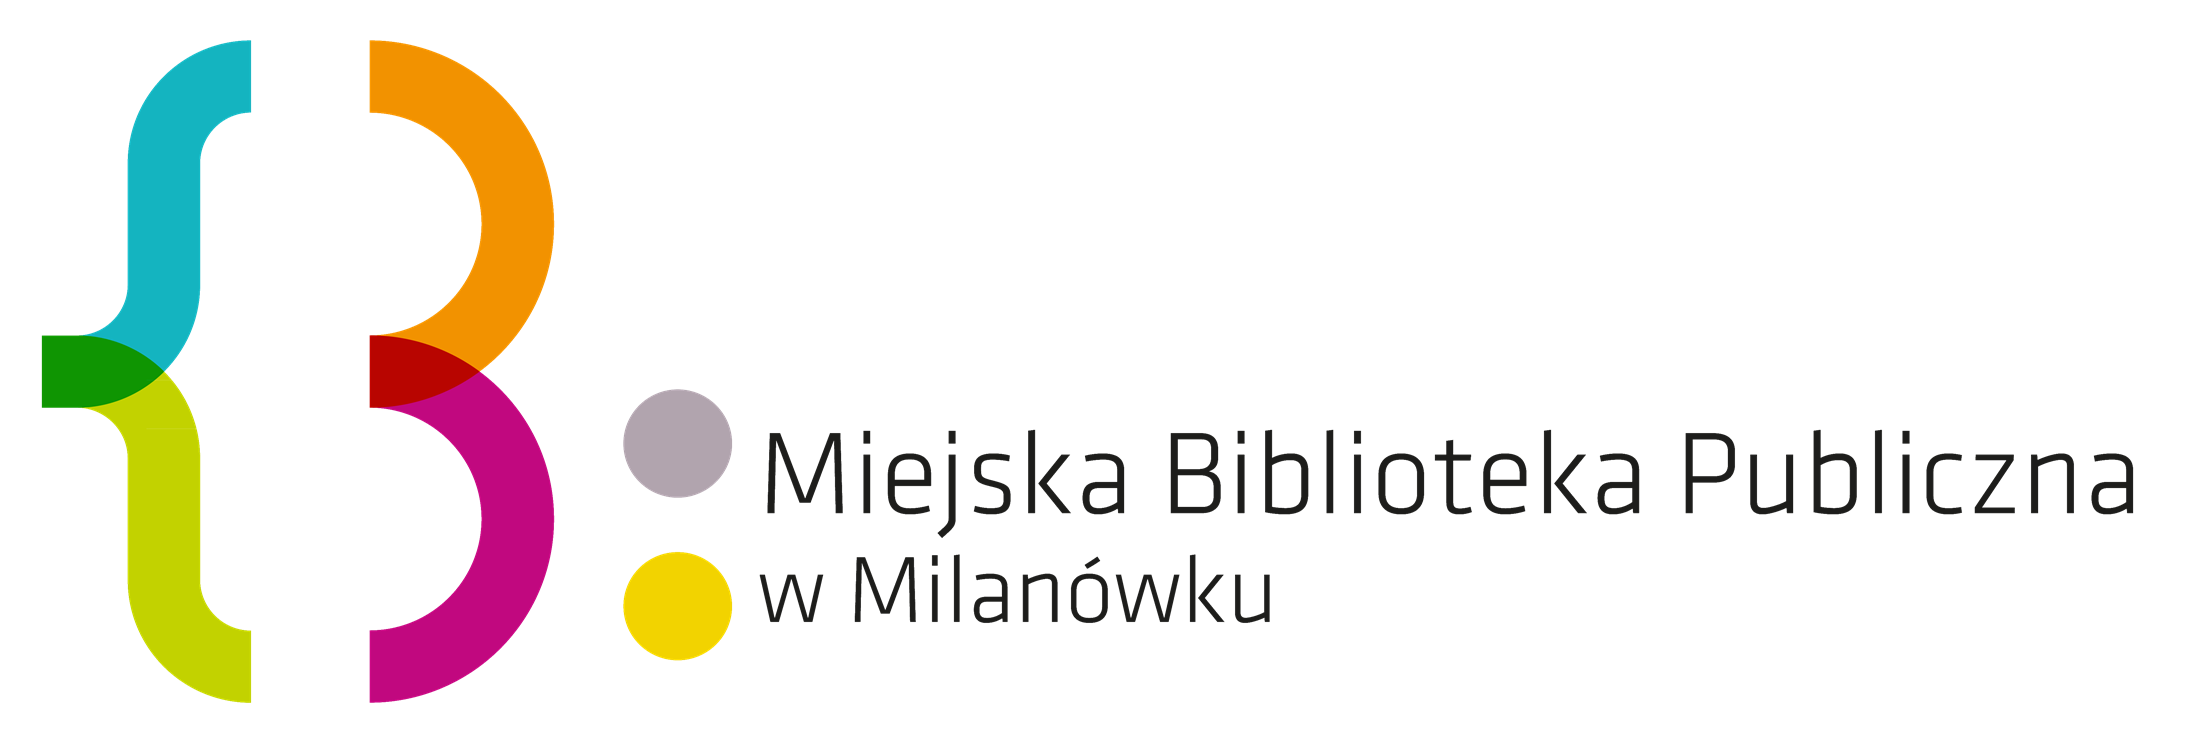 Miejska Biblioteka Publiczna w Milanówku